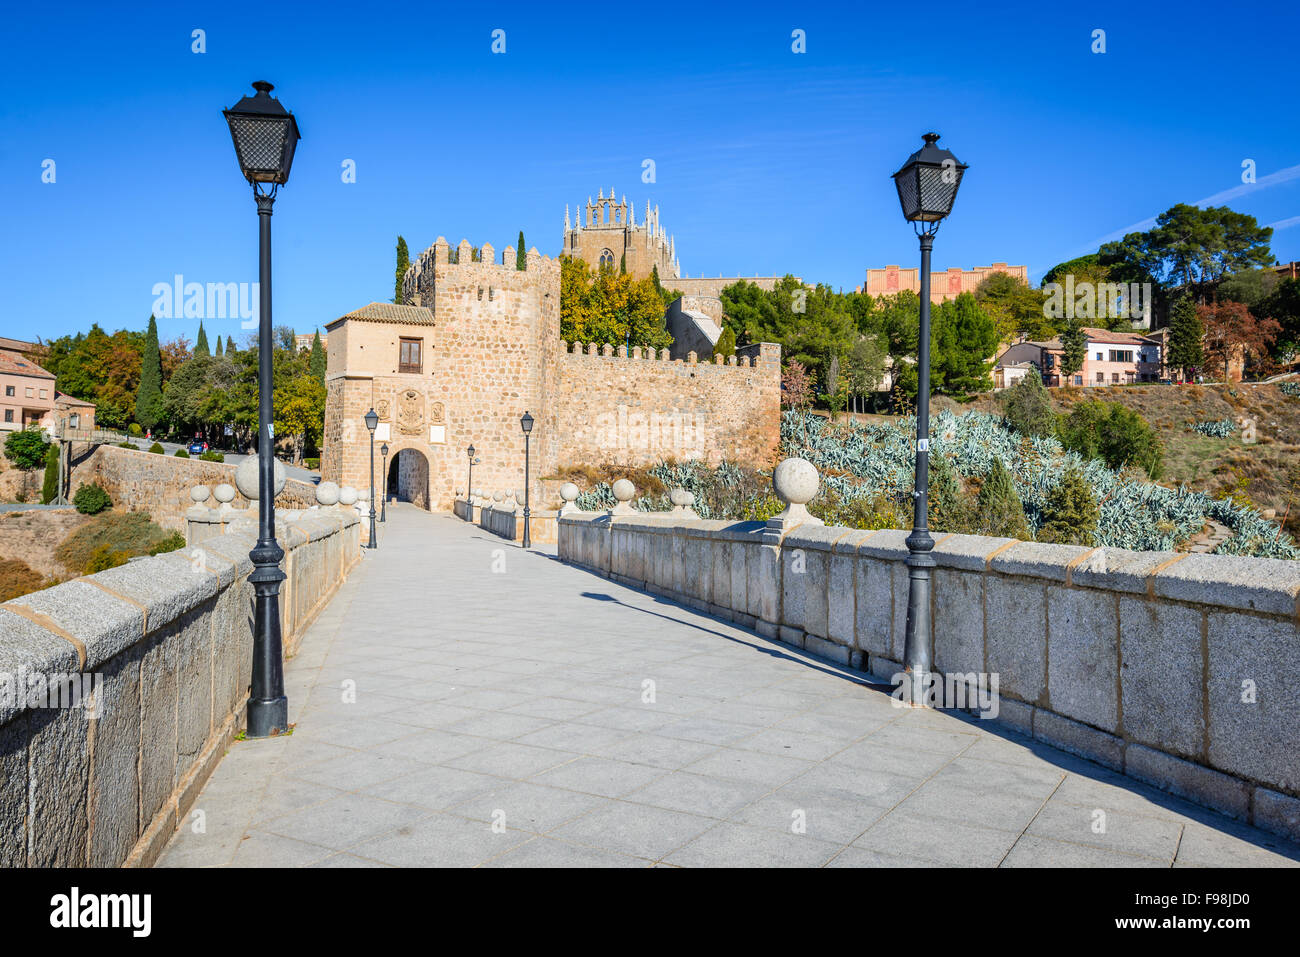 Toledo, Espagne. Puente de San Martin est un pont médiéval sur la rivière Tajo à Tolède, en Espagne. Banque D'Images